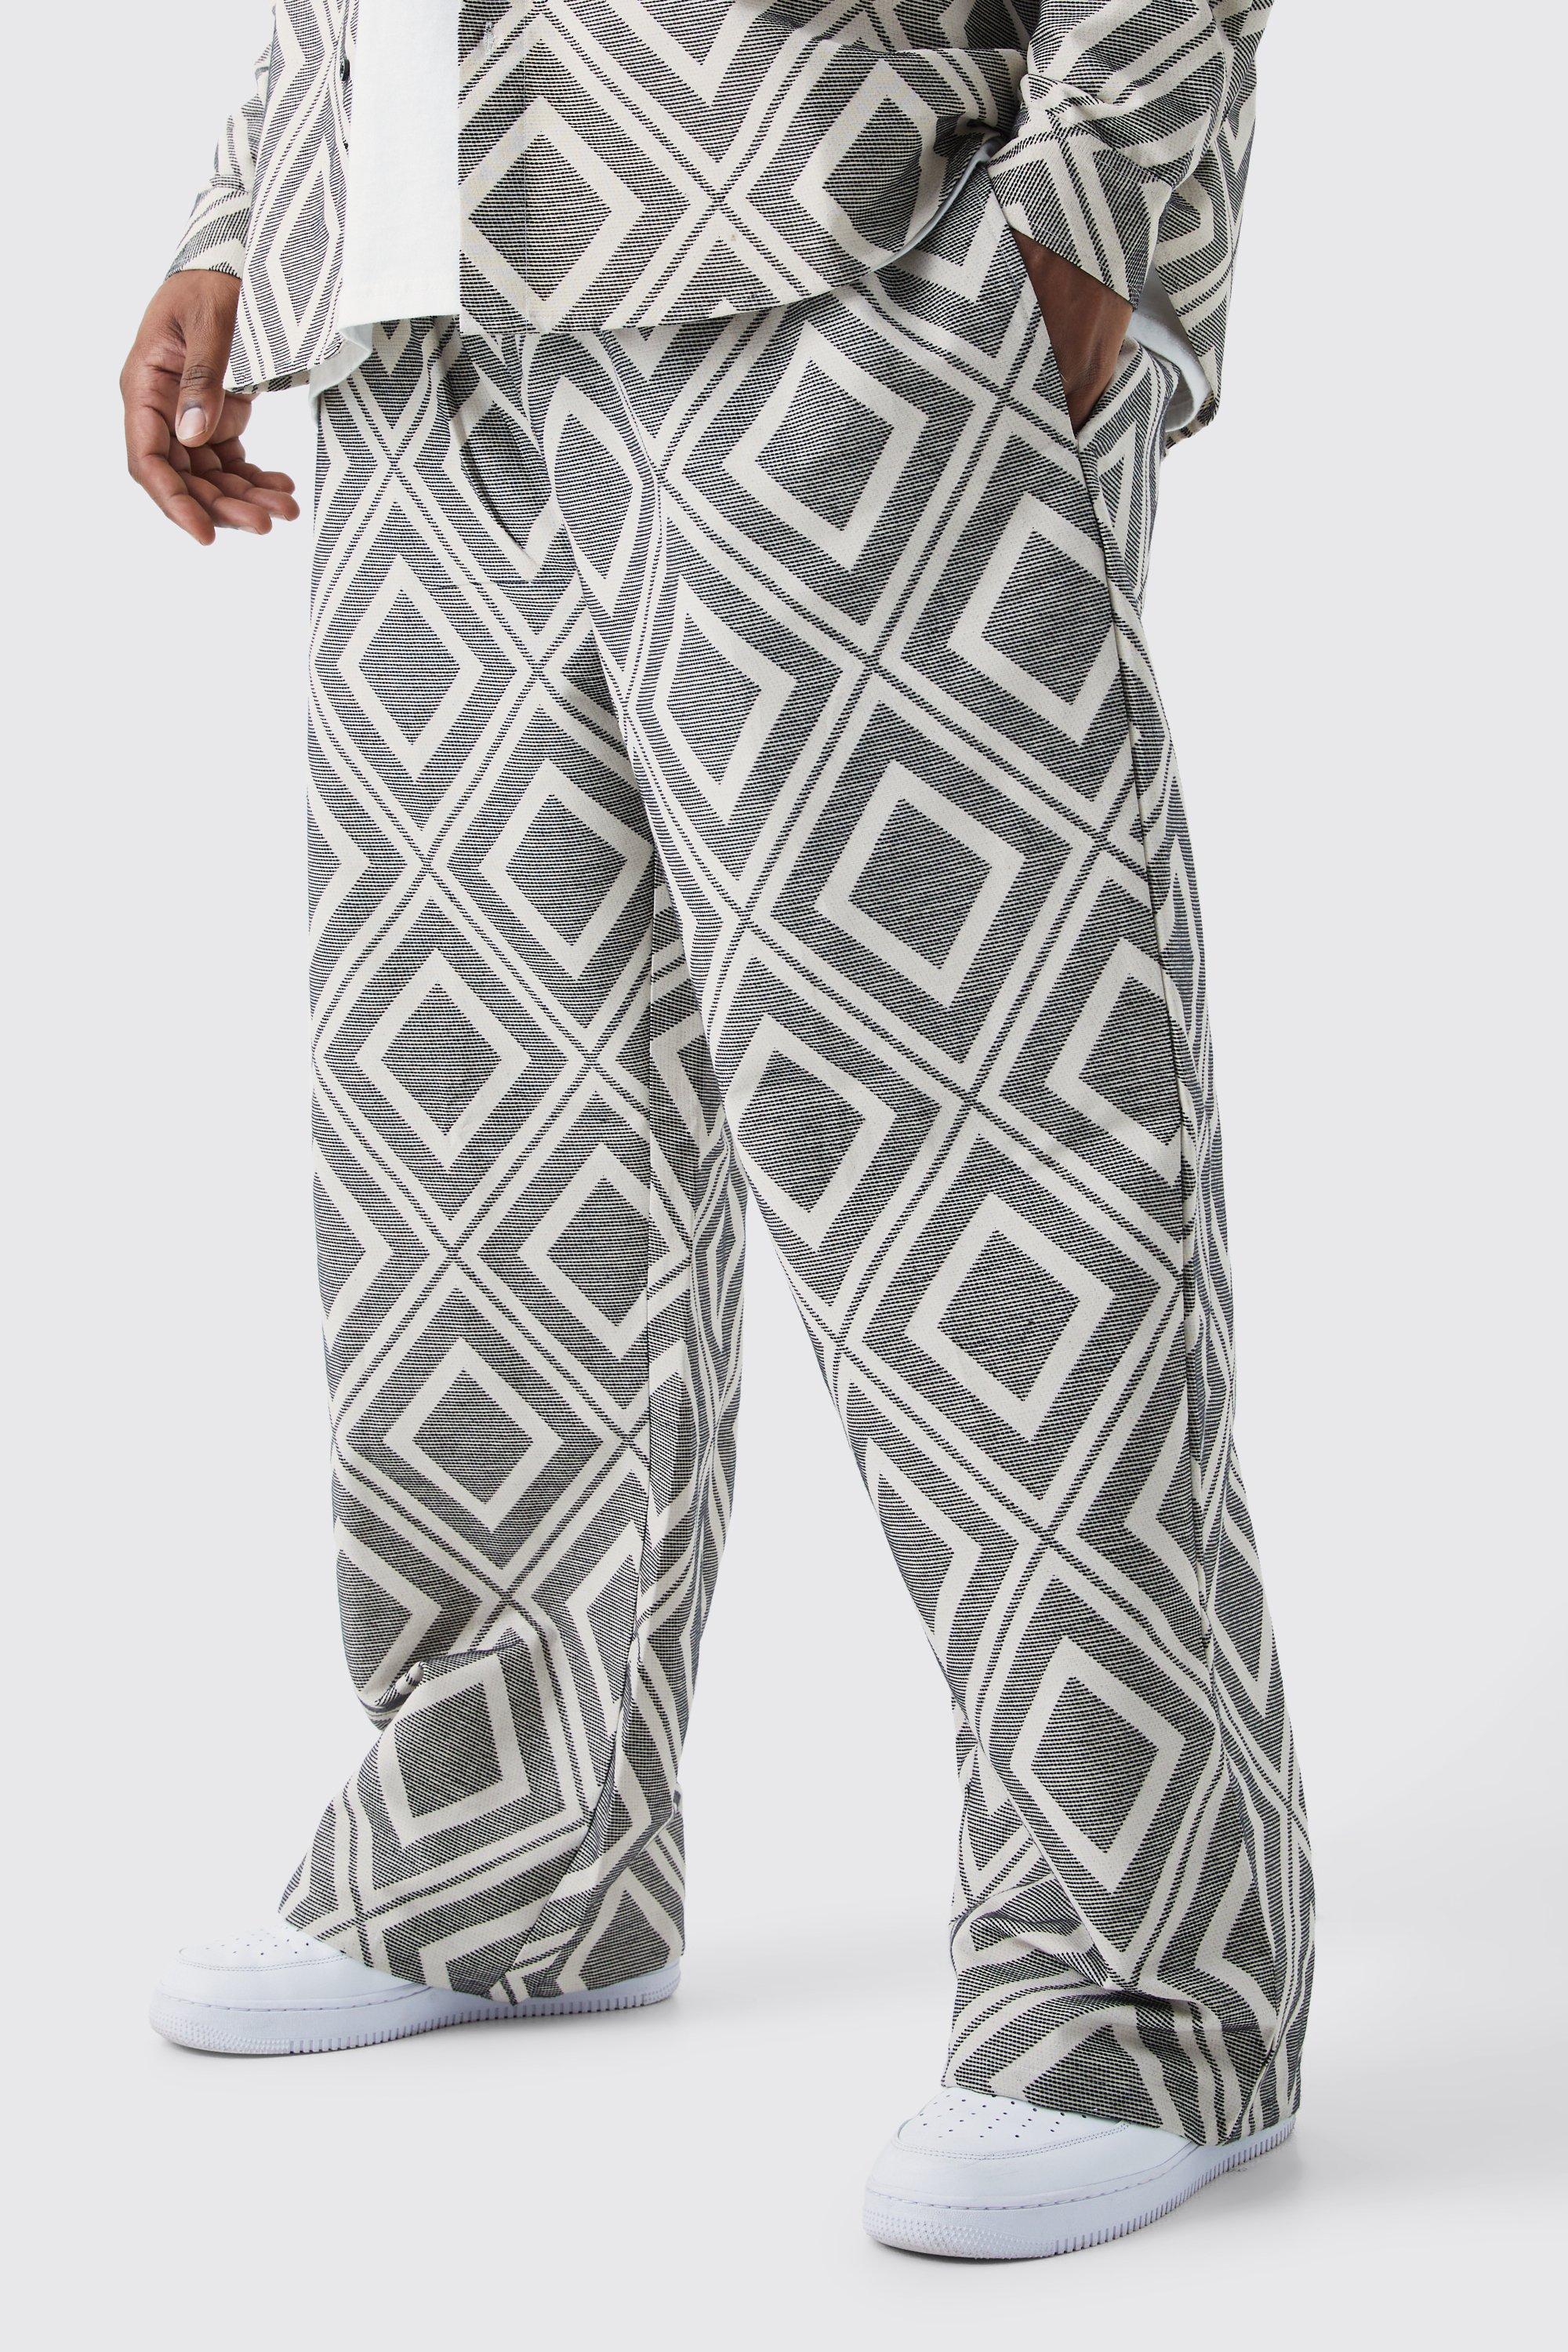 grande taille - pantalon large à motif jacquard homme - gris - xxxl, gris